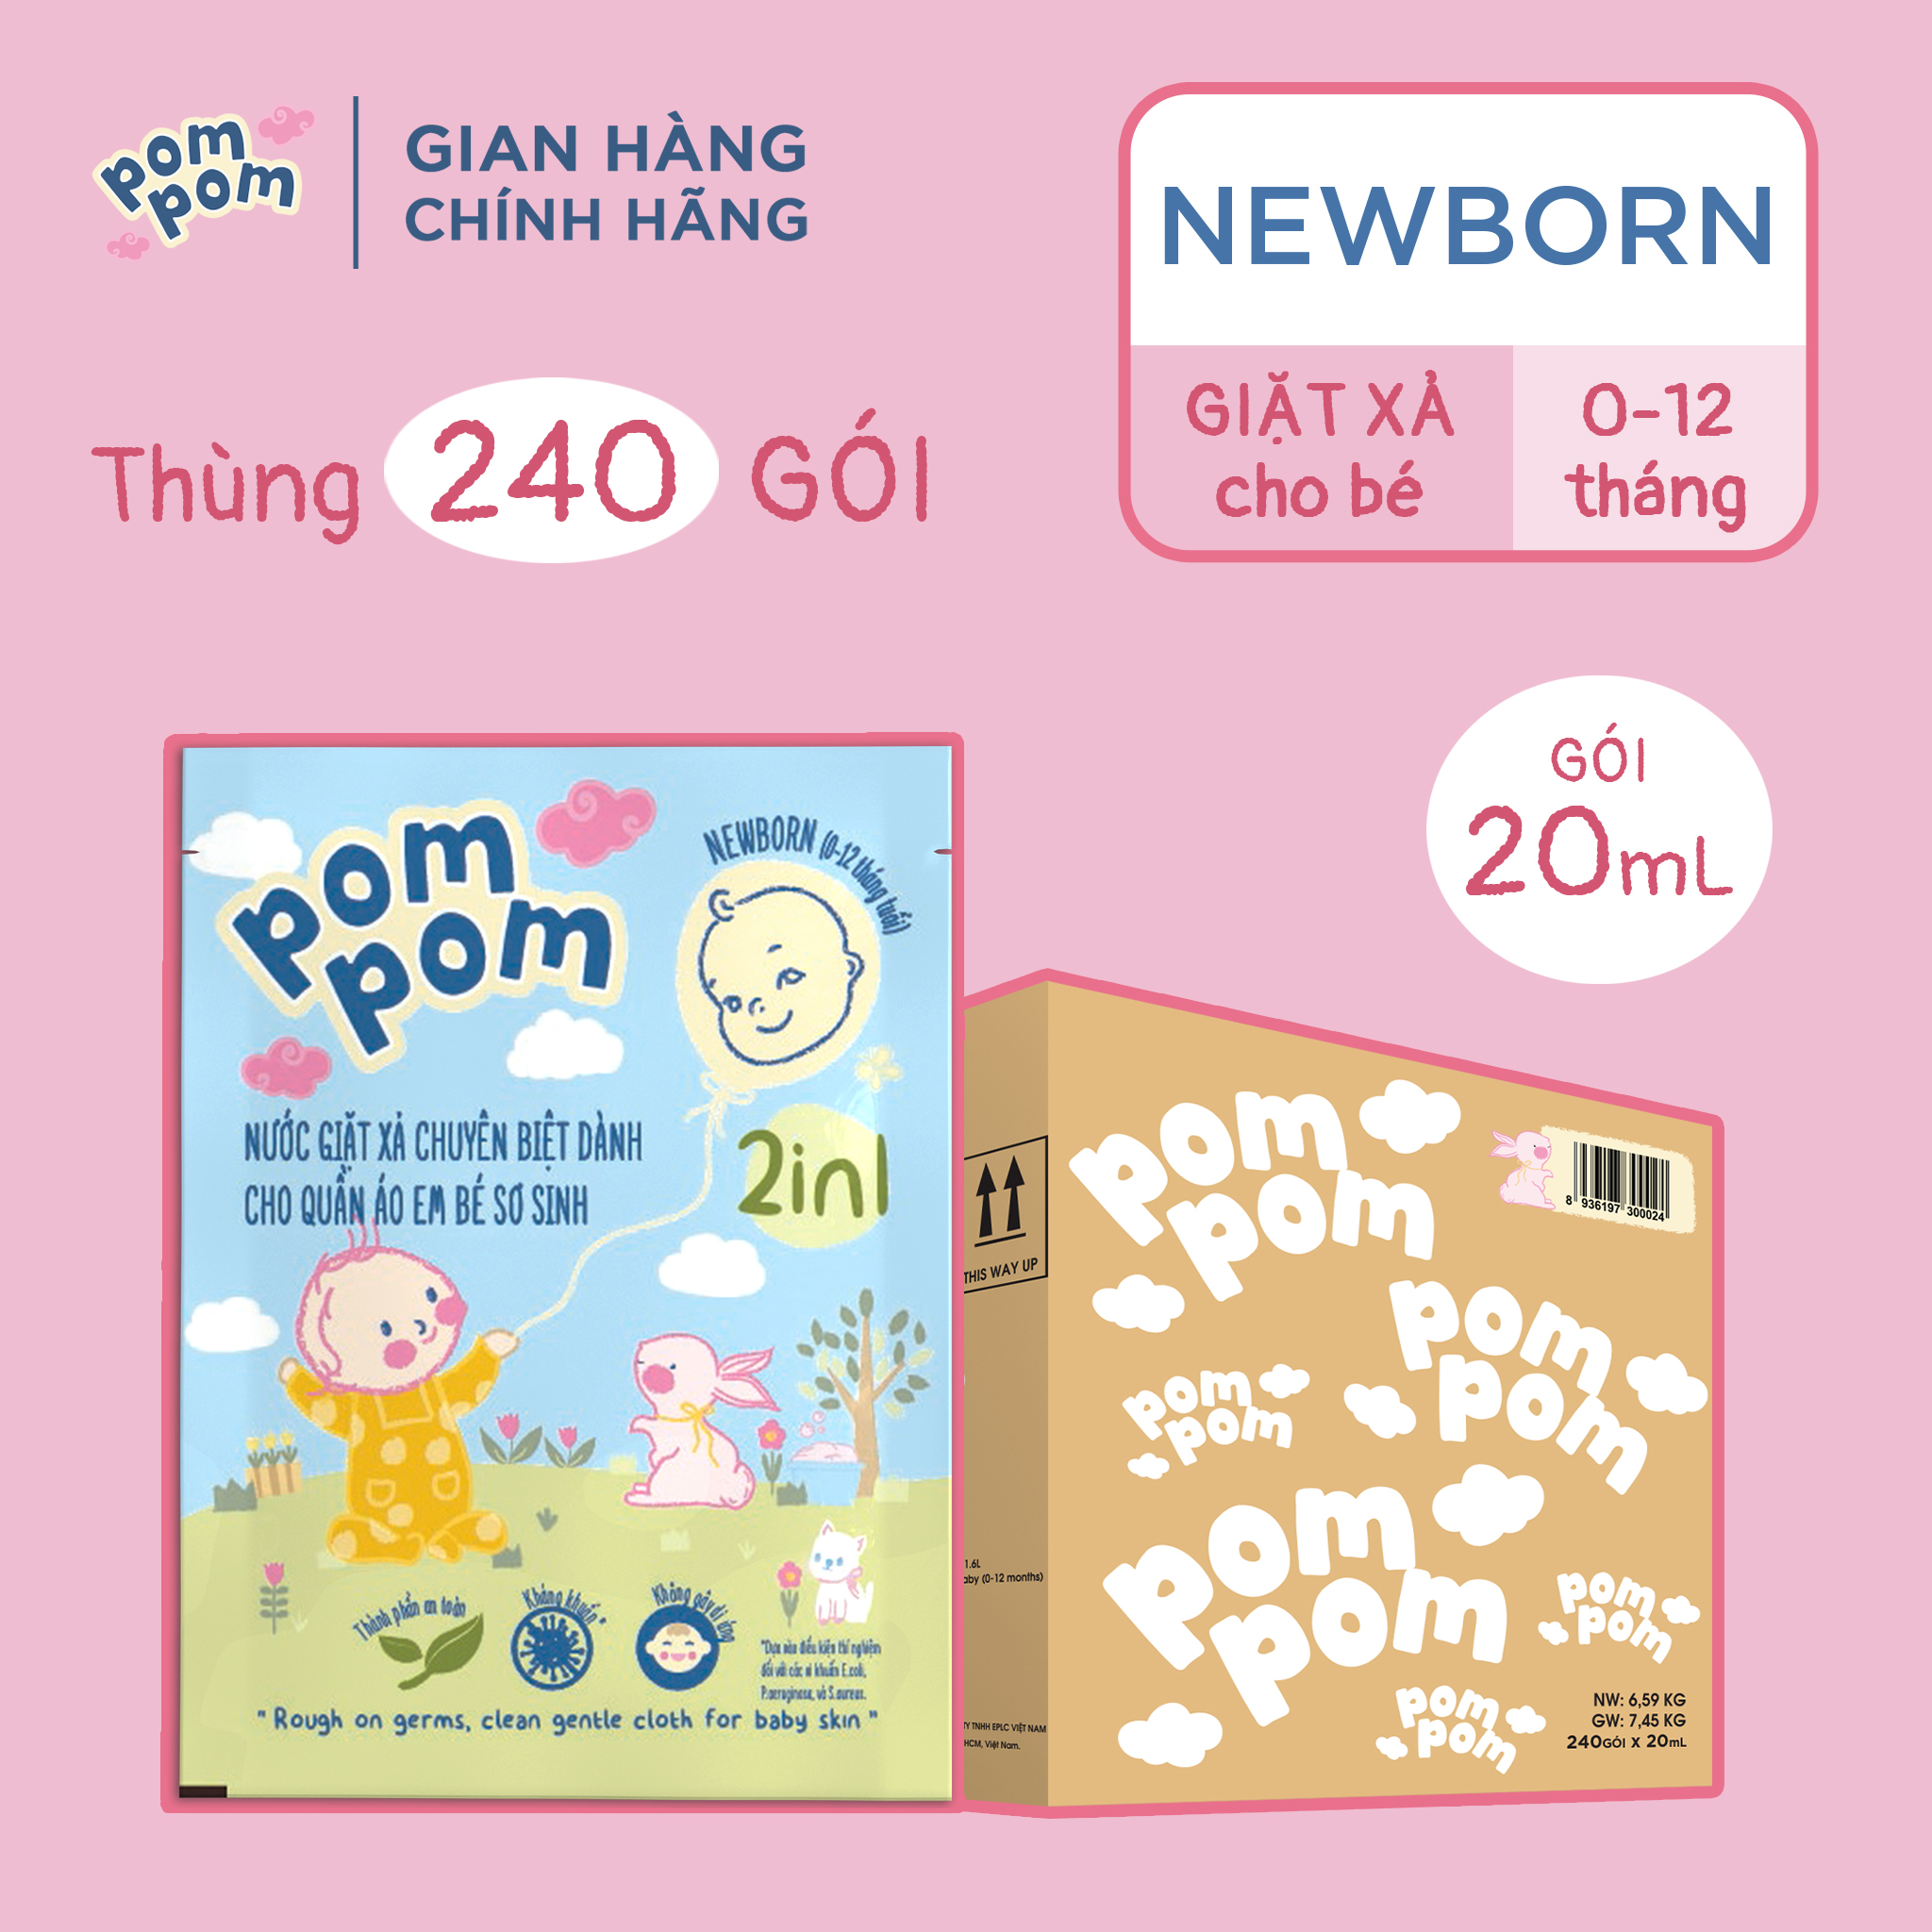 Thùng Gói Nước Giặt Xả Pom Pom Newborn An Toàn Cho Da Bé 0-1 Tuổi thùng